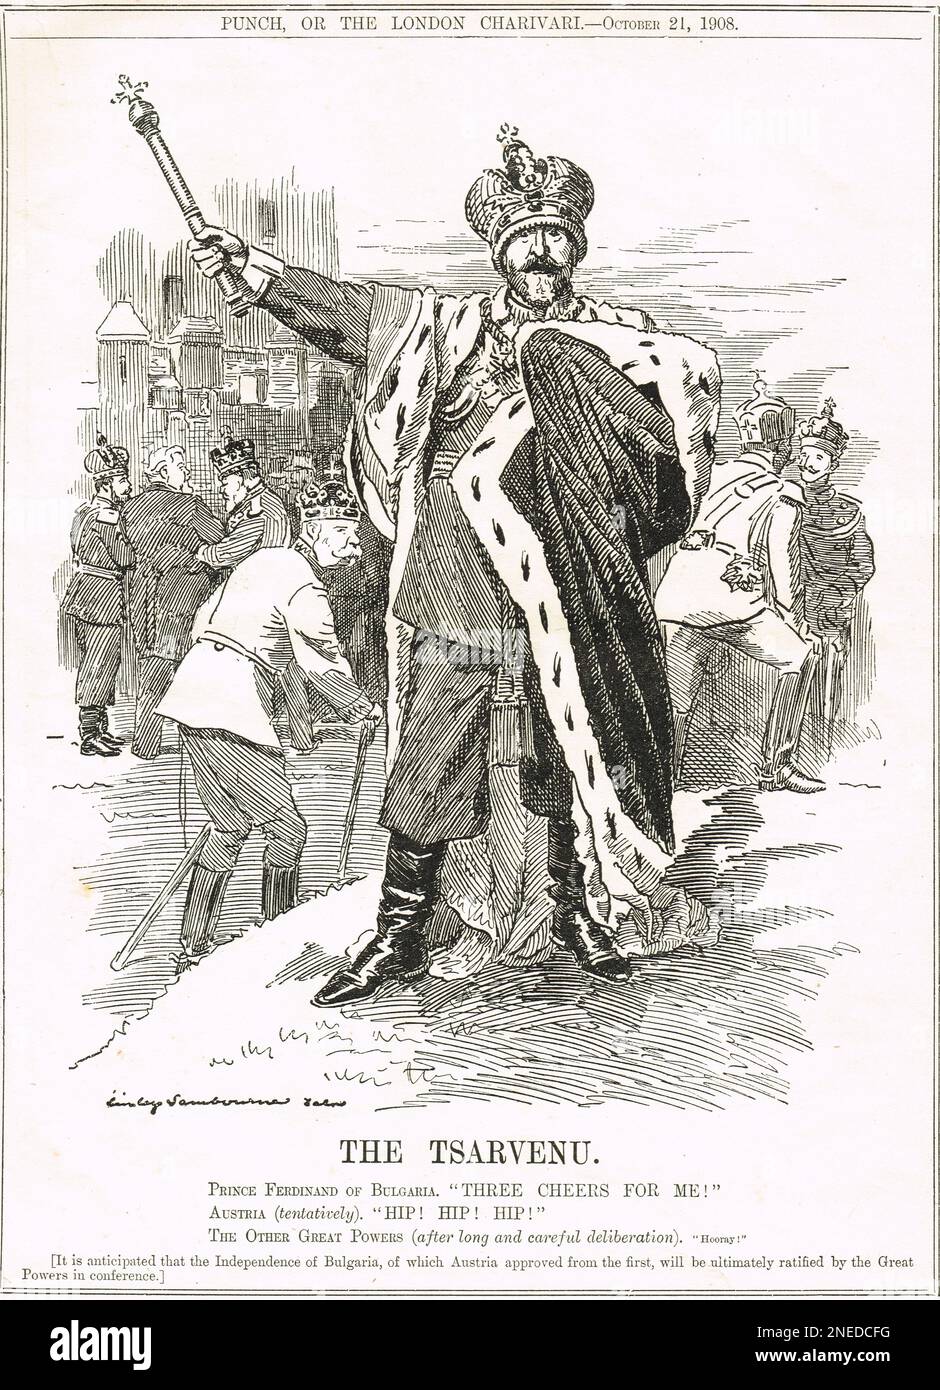 Le Tsarvenu. Prince Ferdinand de Bulgarie, Déclaration d'indépendance de la Bulgarie. Ferdinand prit plus tard le titre de Tsar. Dessin animé par Edward Linley Sambourne de 1908 Banque D'Images